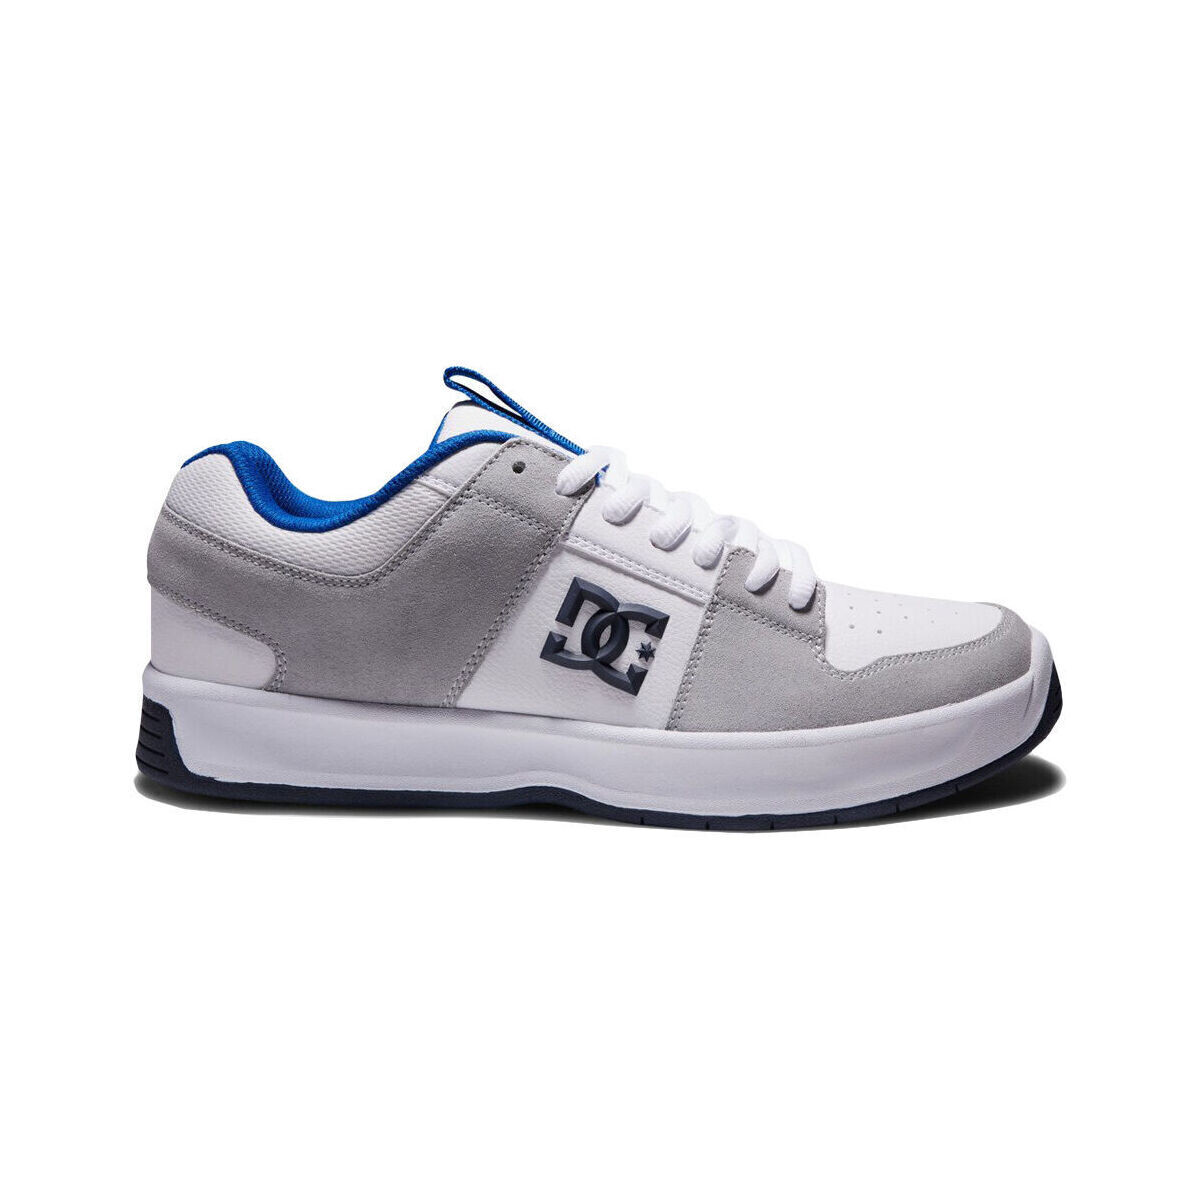 Παπούτσια Άνδρας Sneakers DC Shoes Lynx zero ADYS100615 WHITE/BLUE/GREY (XWBS) Άσπρο